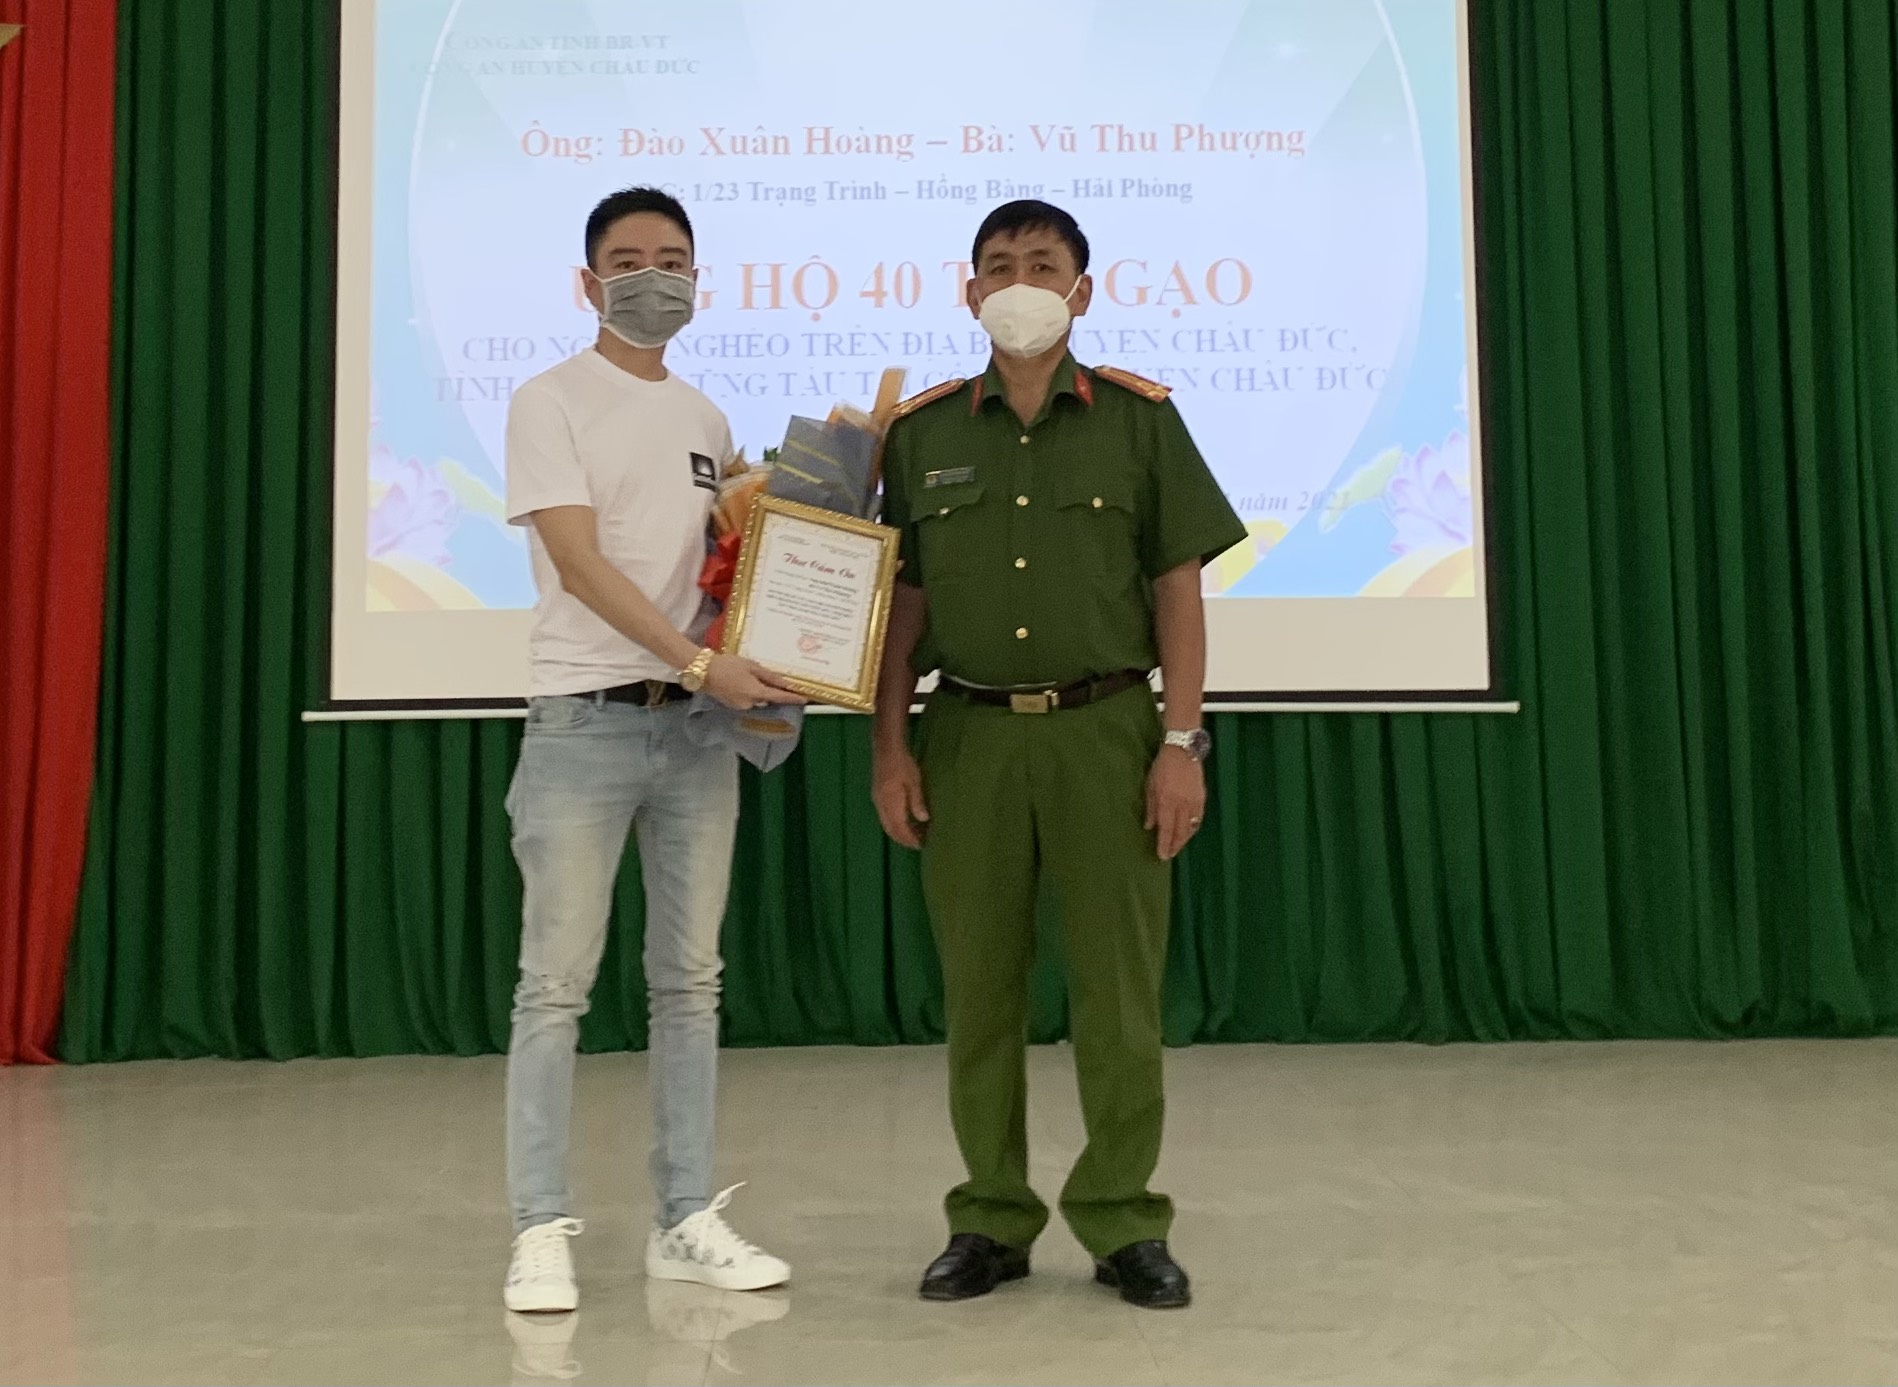 Thượng tá Nguyễn Minh Hiệp, Phó Trưởng Công an huyện Châu Đức tặng hoa và thư cảm ơn cho ông ủng hộ 40 tấn gạo